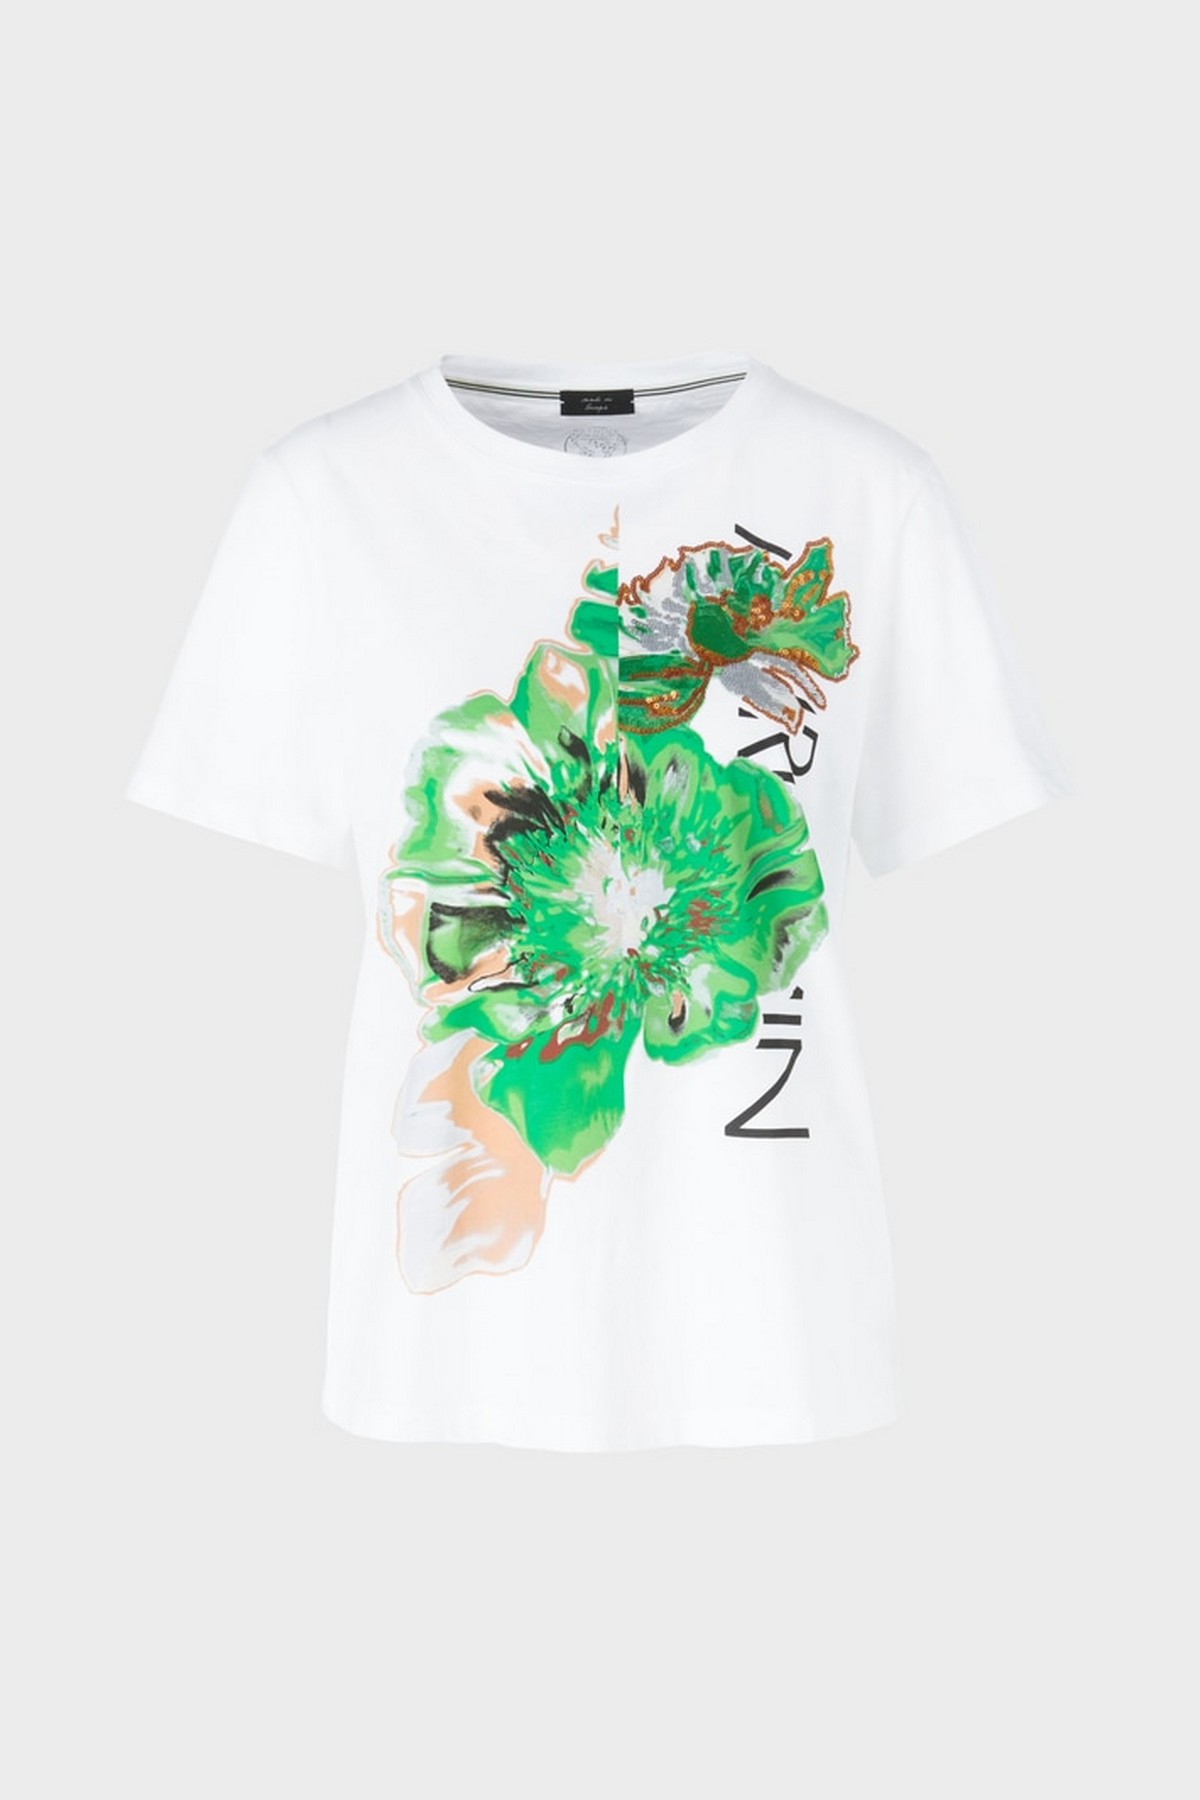 T-shirt bloem Marc Cain in de kleur wit groen van het merk Marc Cain Collections